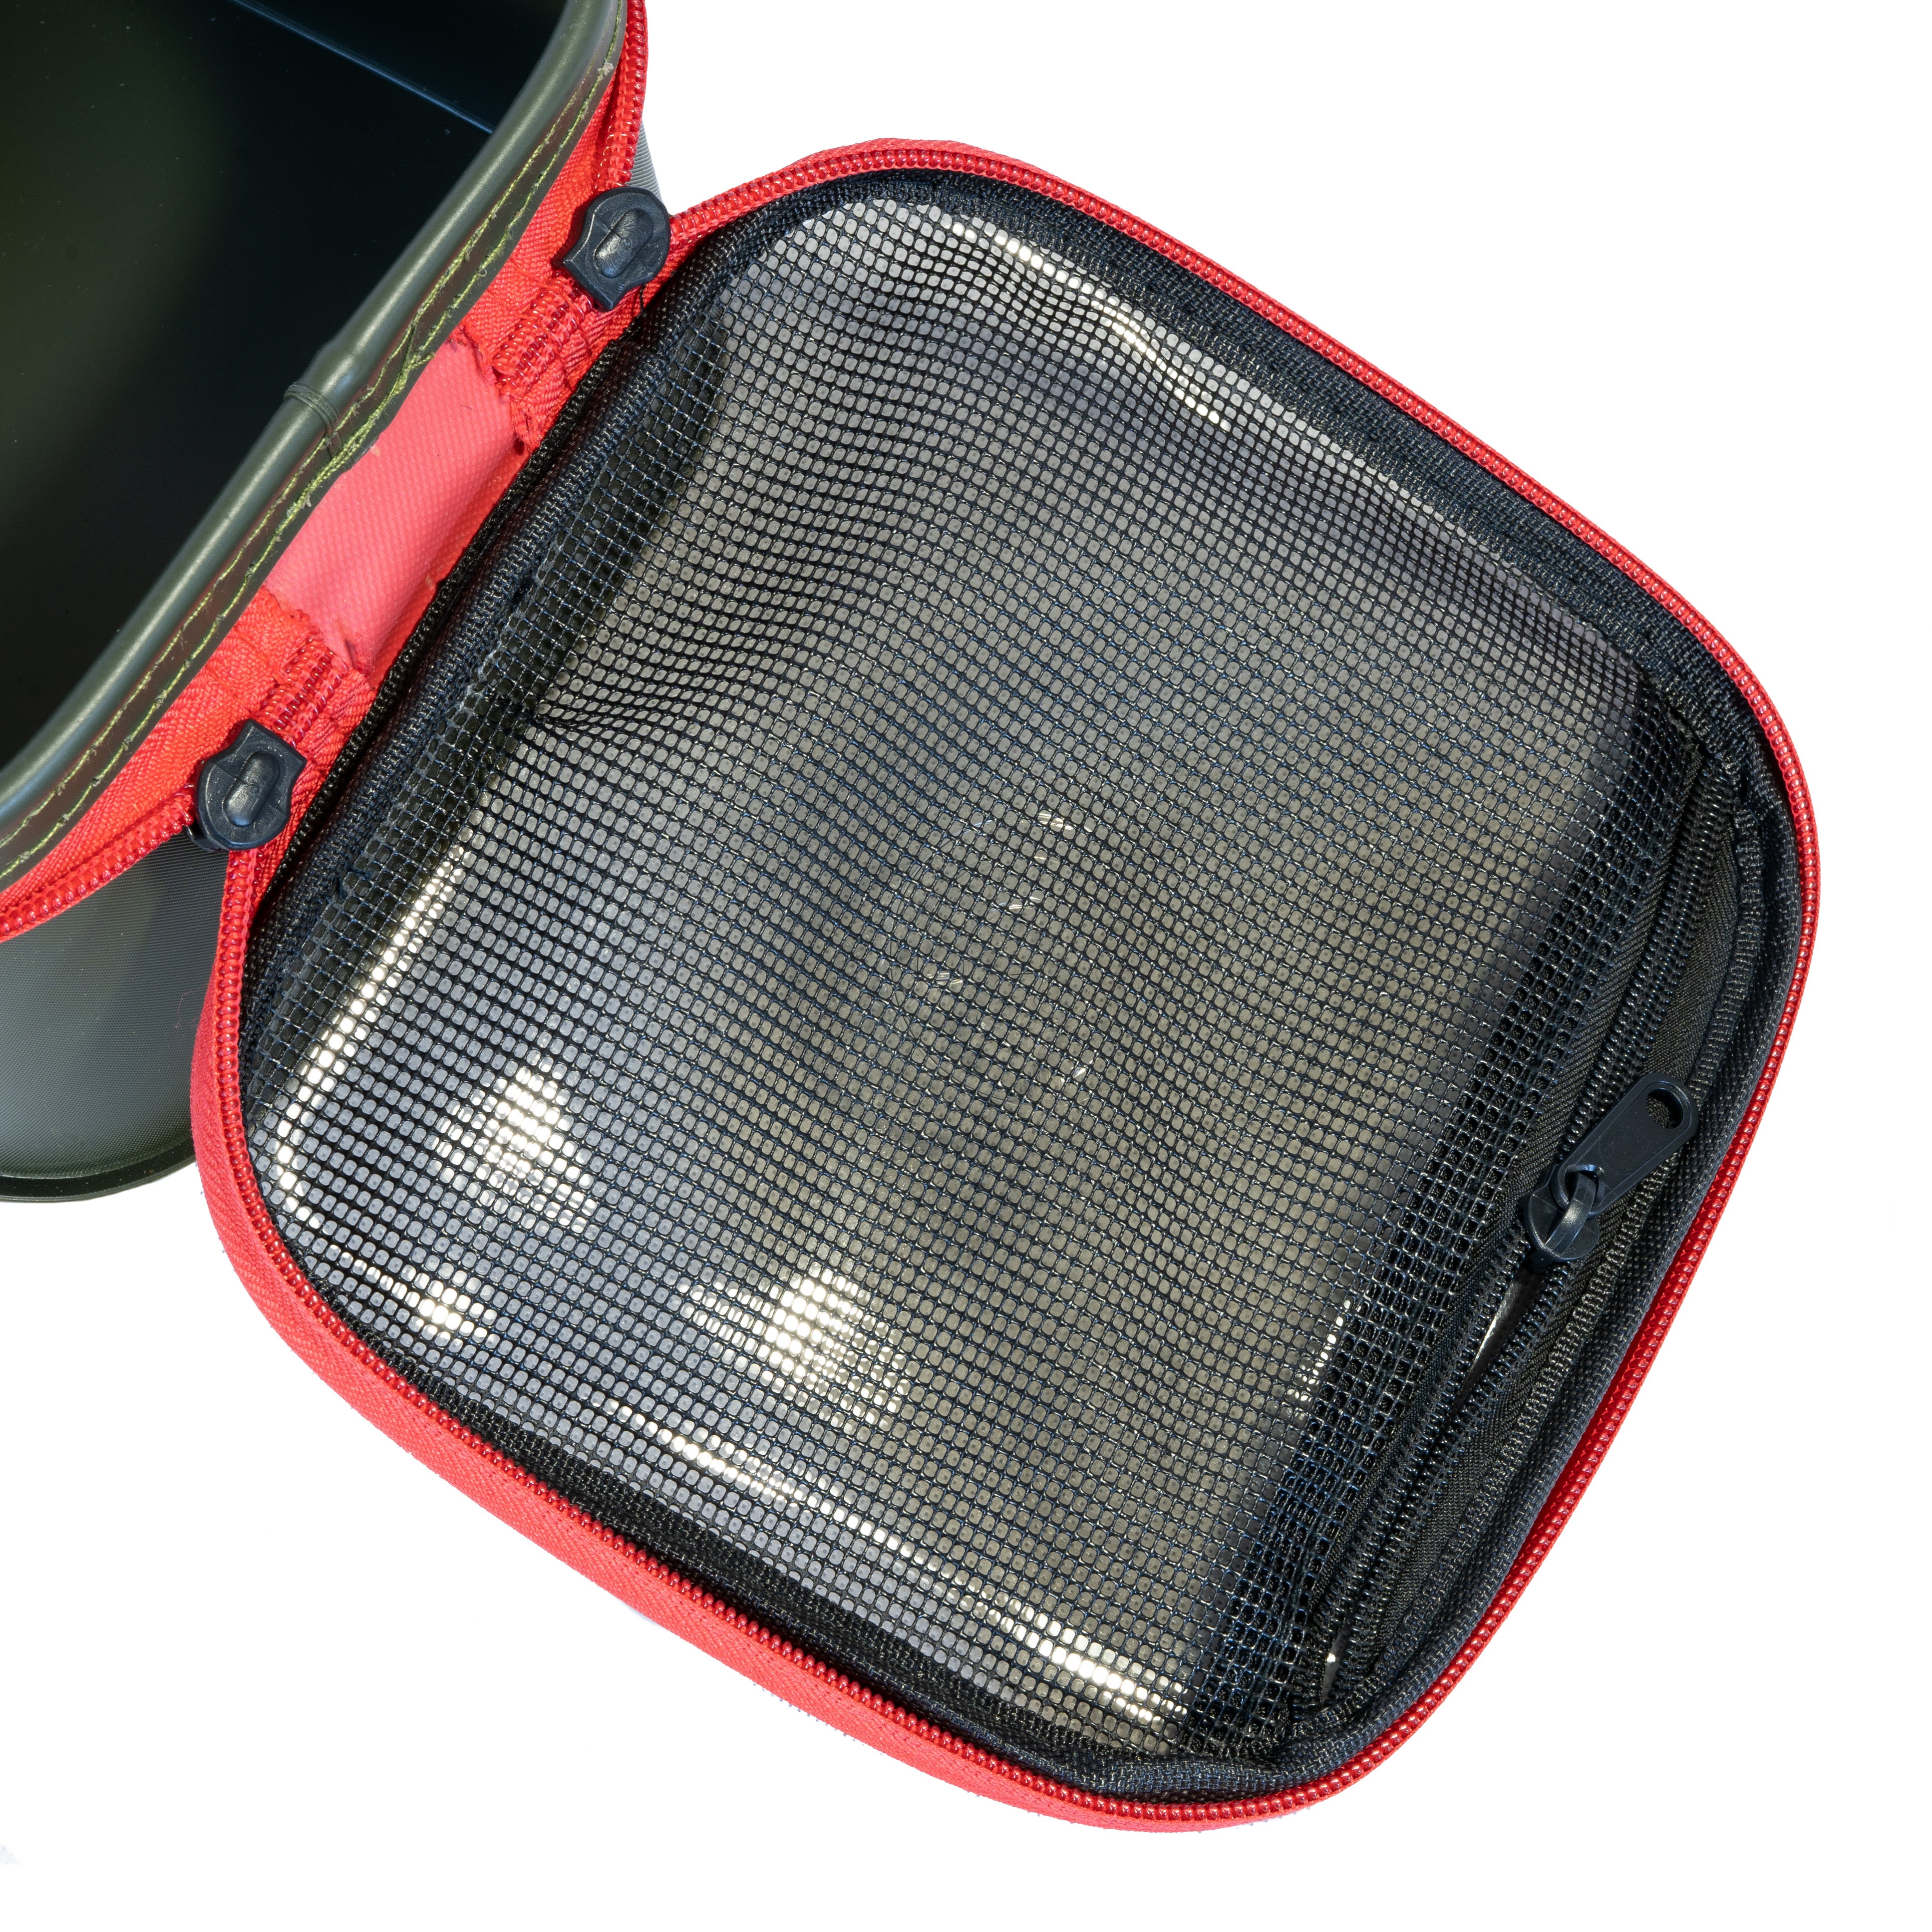 Garda pouzdro EVA Handy Case + zip mesh